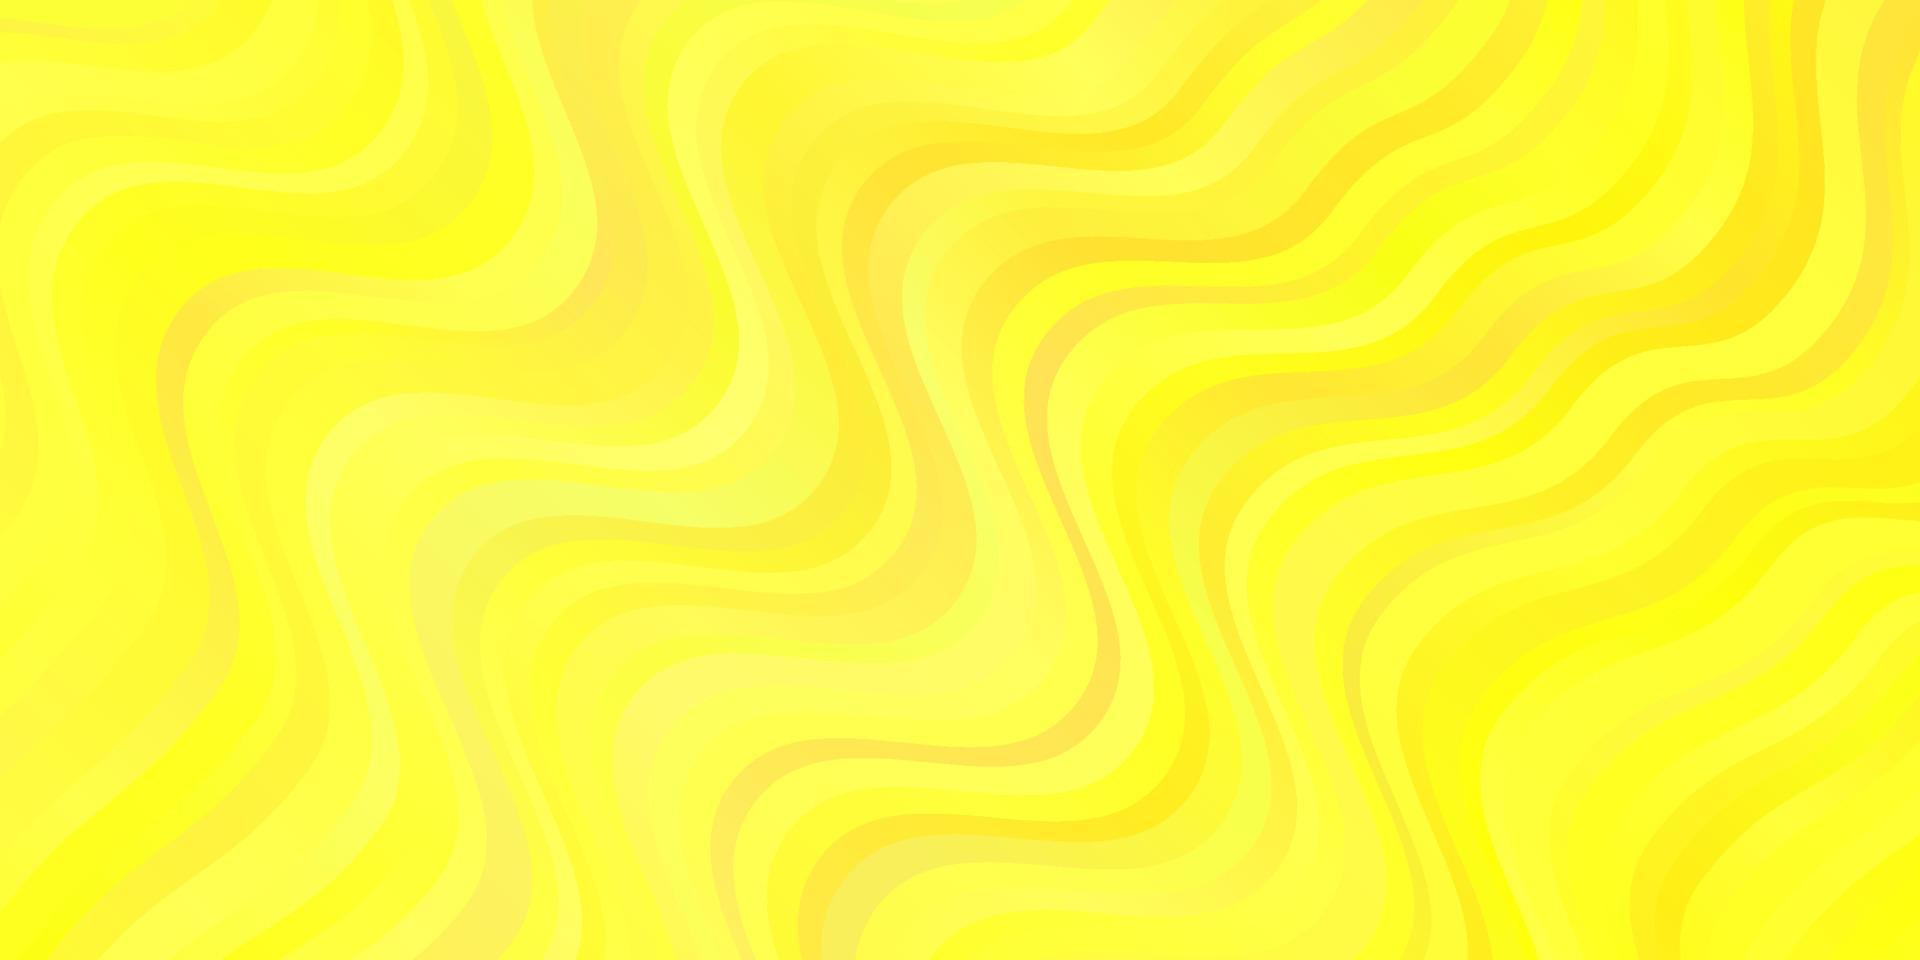 padrão de vetor amarelo claro com linhas.